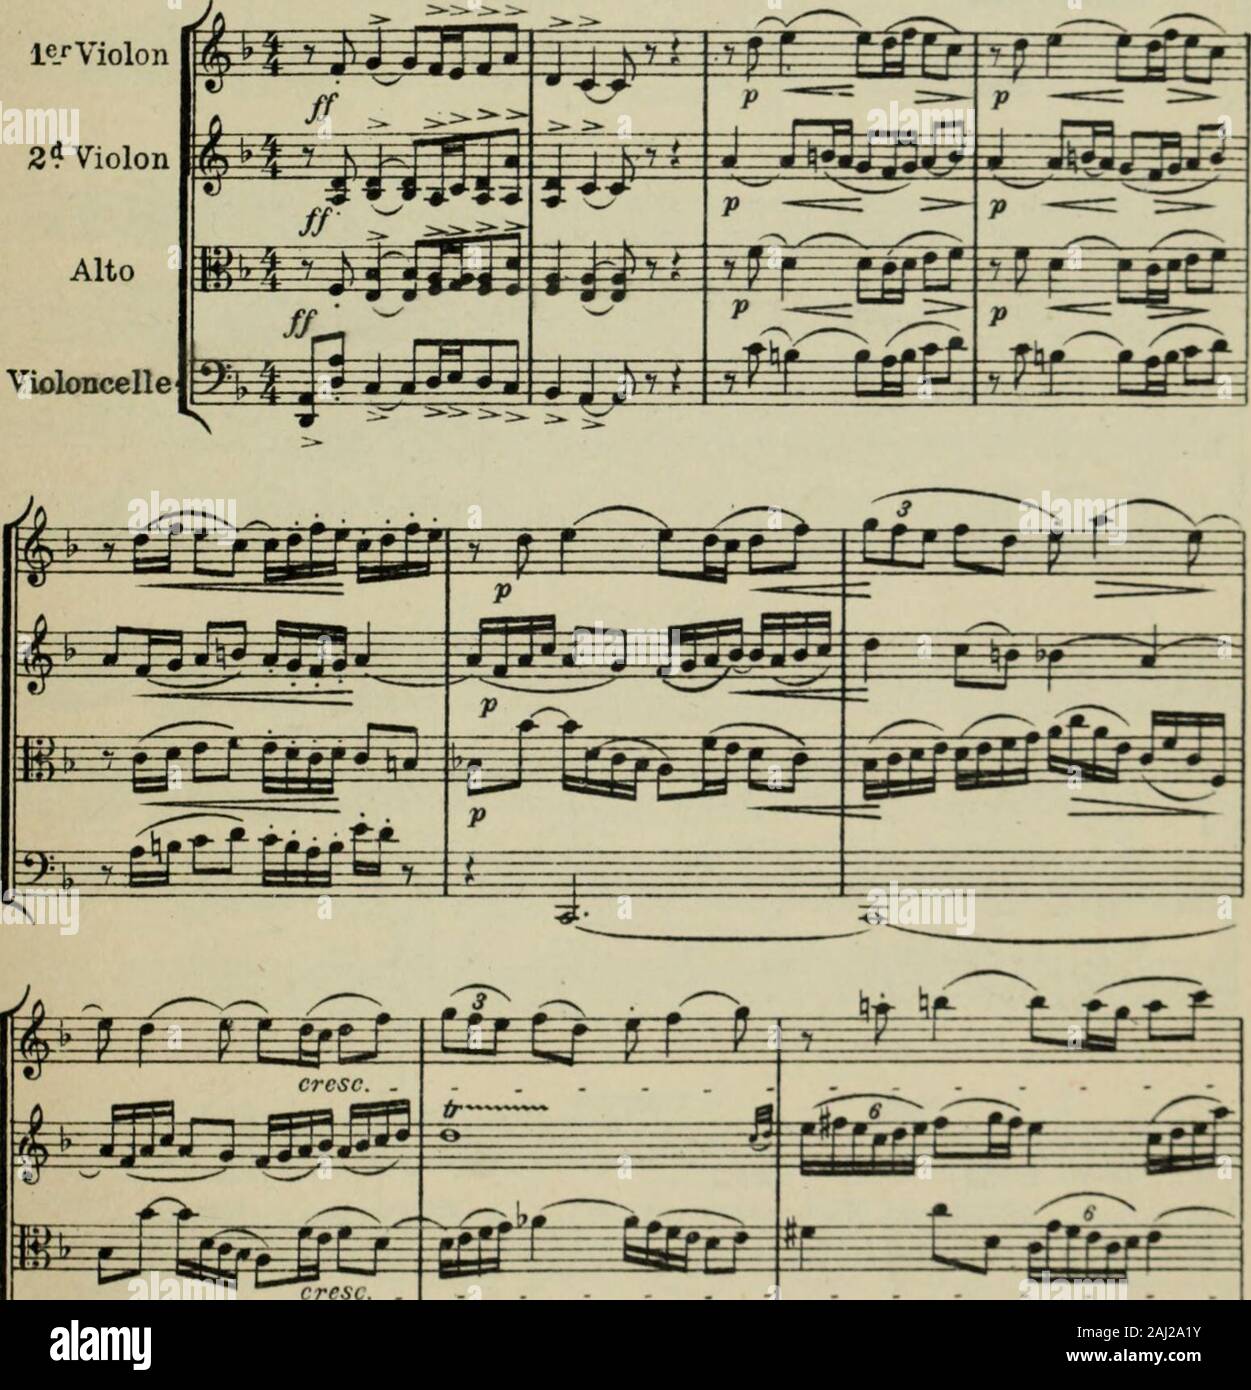 Quatuor, pour 2 violons, alto et violoncelle, en ré mineur . A mon Maître GABRIEL pAUlf^ f|OQER=DUCÂ: pour 2 Violons, Altoet Violoncelle QUATUOR en ré mineurI ROGER -DUCASSE(1900-1909) Modéré, mais décidé 92=J le r Violon2* Violon. m r Ynffir fr f= rPrrr -tfTE 1 A. Durand 4 Fils, Editeurs Paris, 4, Place de la Madeleine D.& F. 7417 Copyright by A. Durand A Fils, Pari- Stock Photo